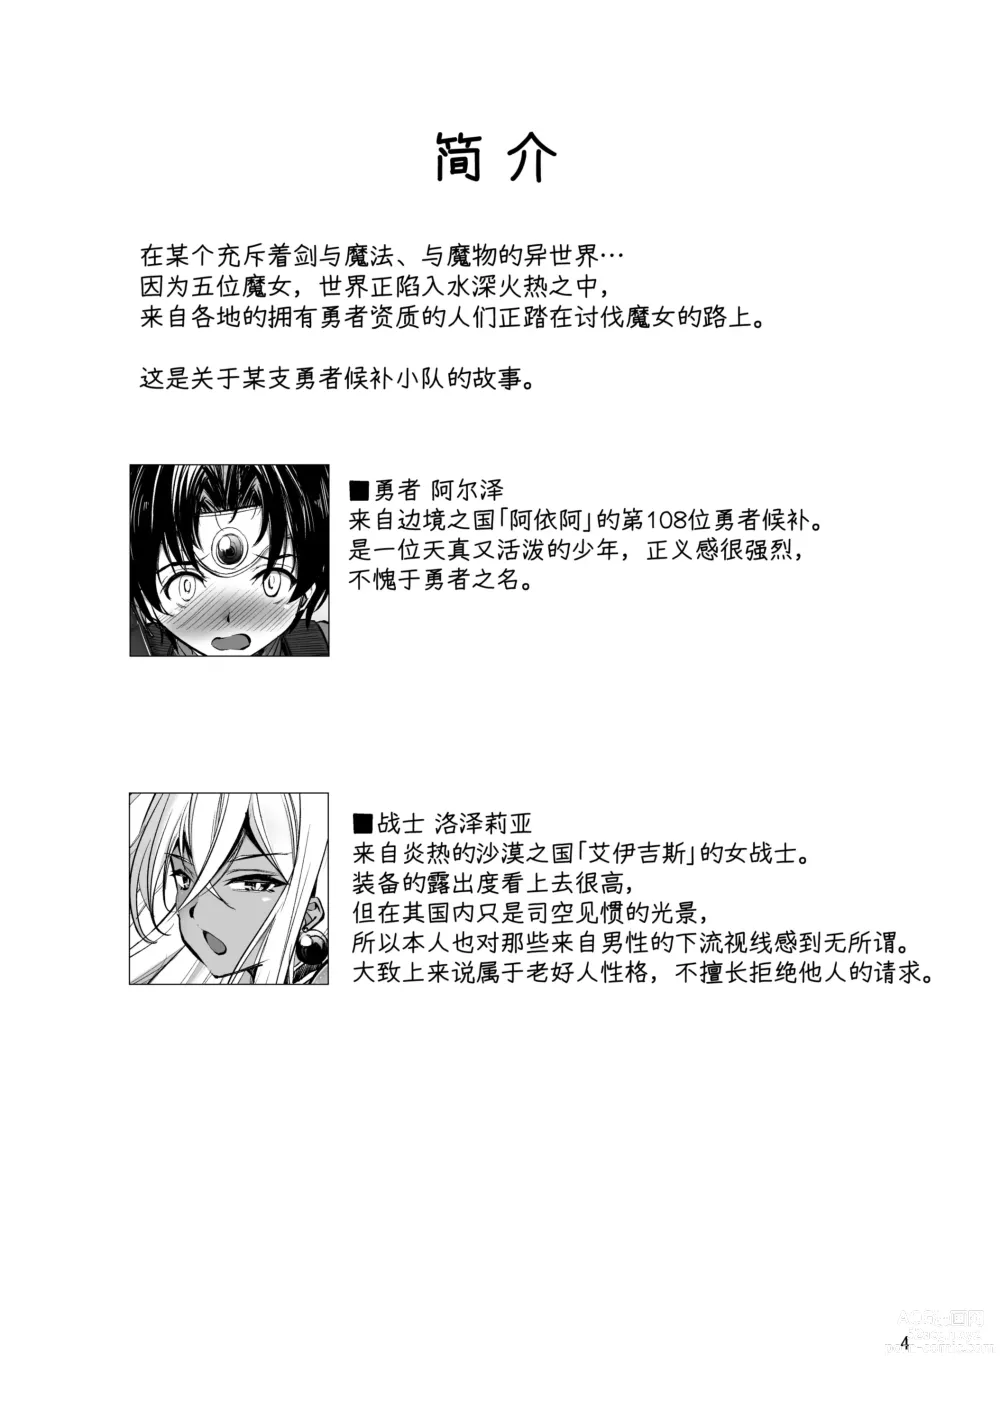 Page 3 of doujinshi Rozeria-san wa Kotowarenai.